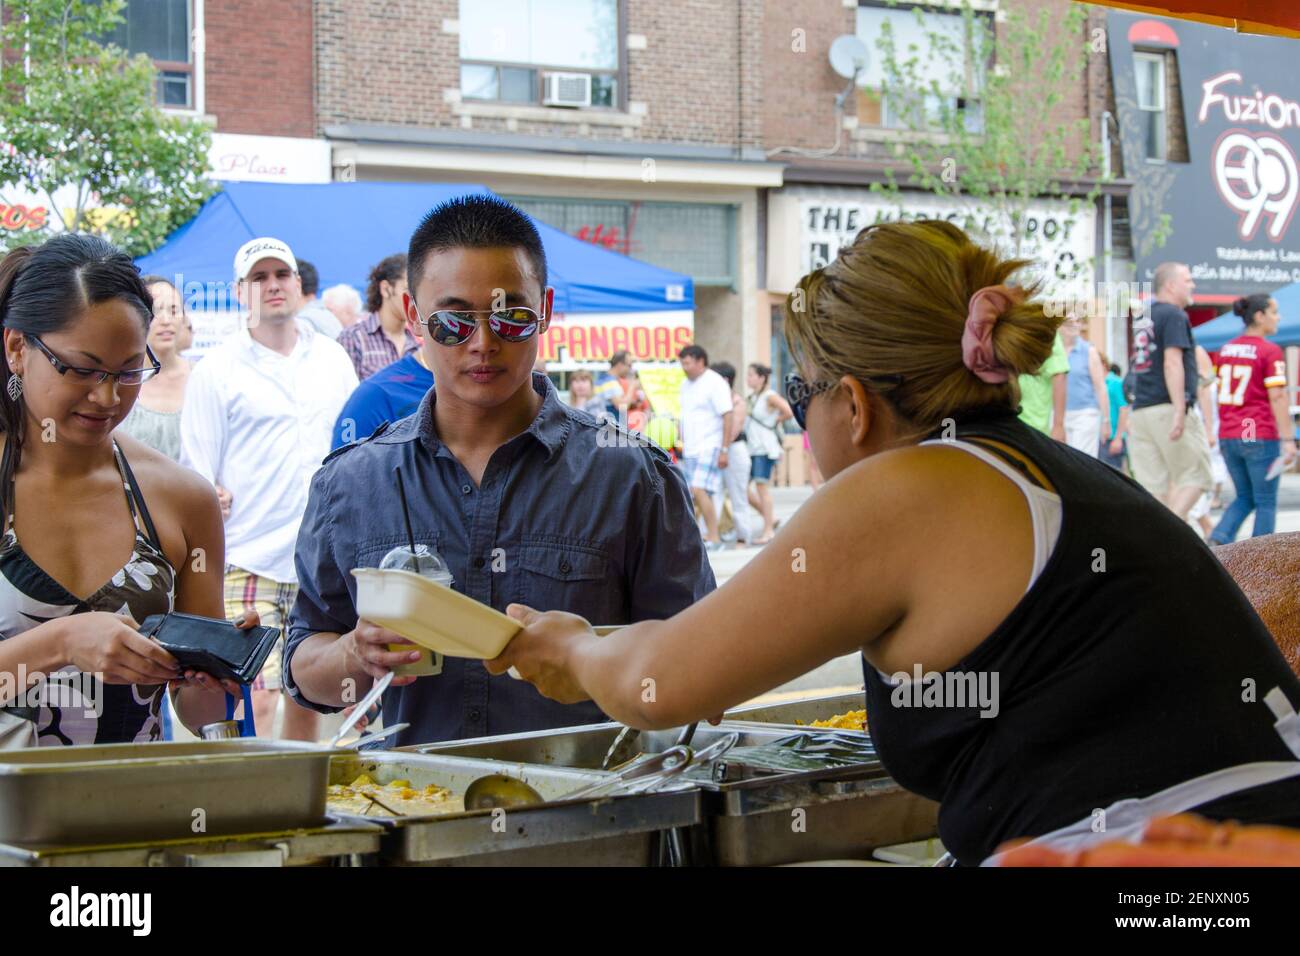 Salsa auf dem St. Saint Clair Festival Szenen: Eine weibliche Serverin zeigt zwei Kunden den Inhalt eines Containers, während eine Dame in einem Haltertop auf ihre wa schaut Stockfoto